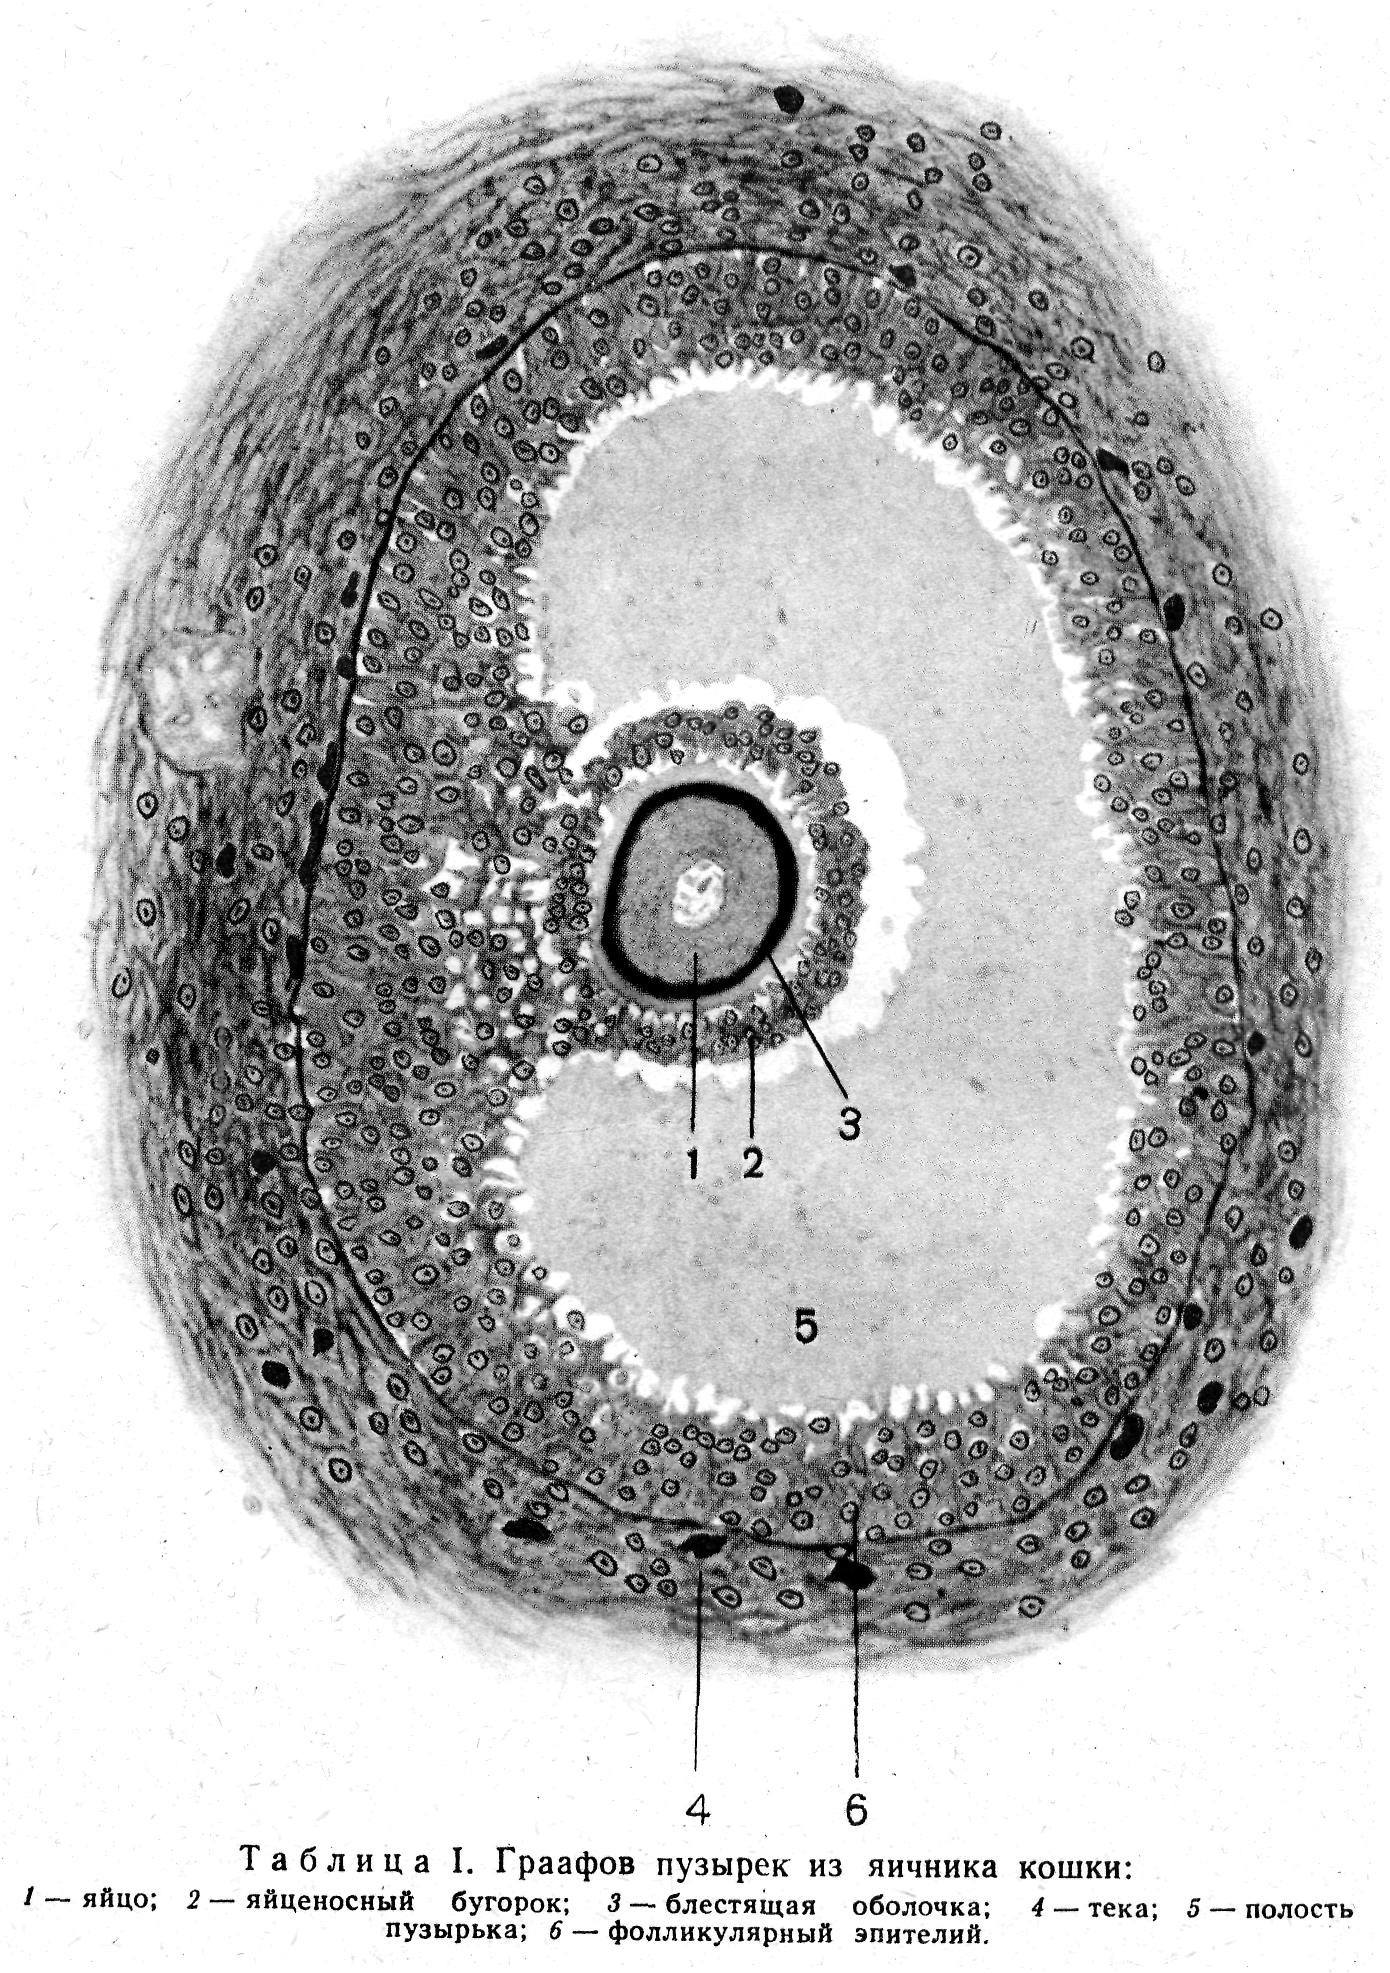 Яйцеклетка млекопитающего гистология